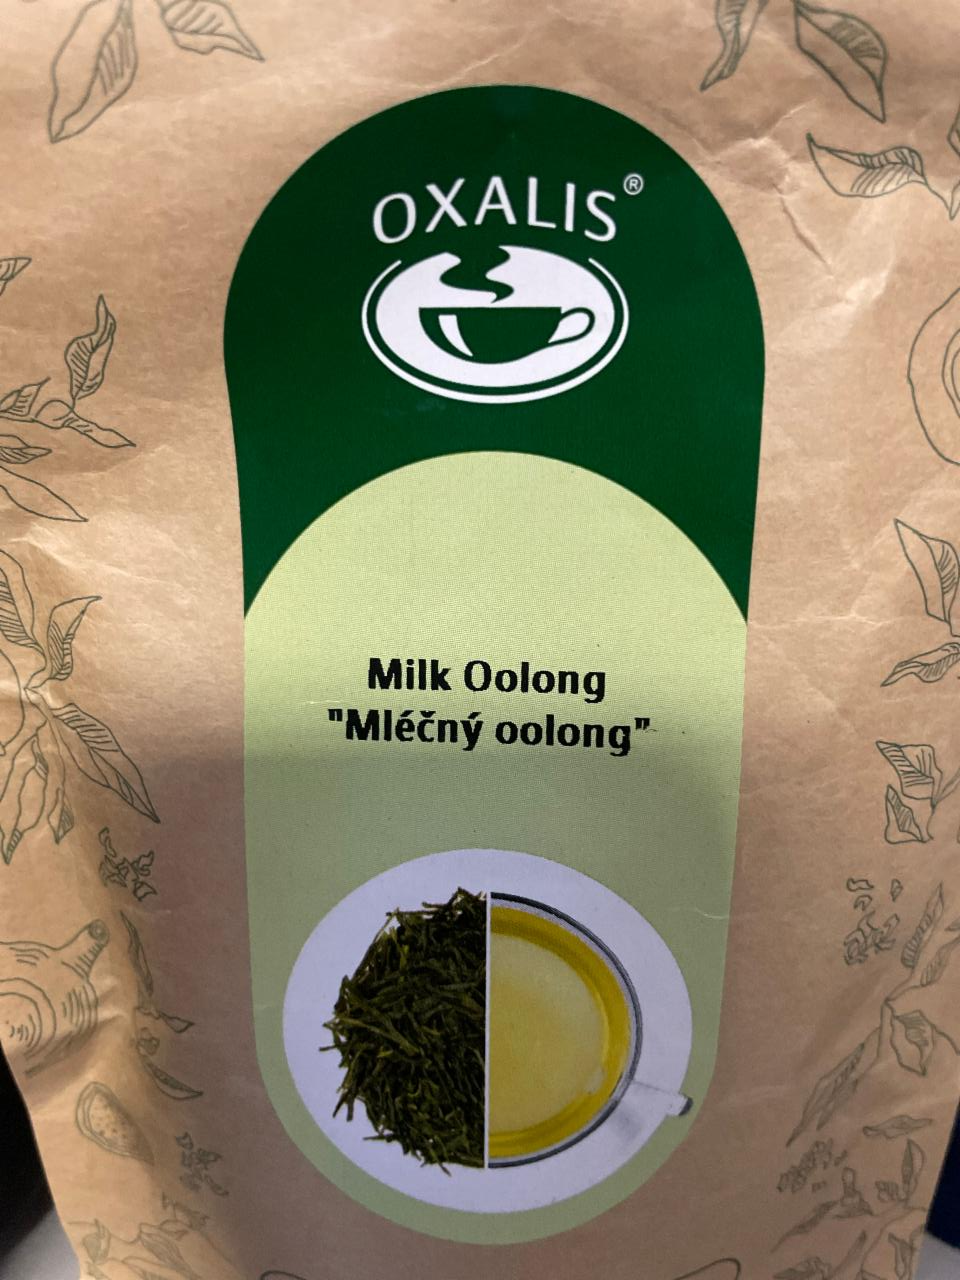 Fotografie - Milk Oolong Oxalis